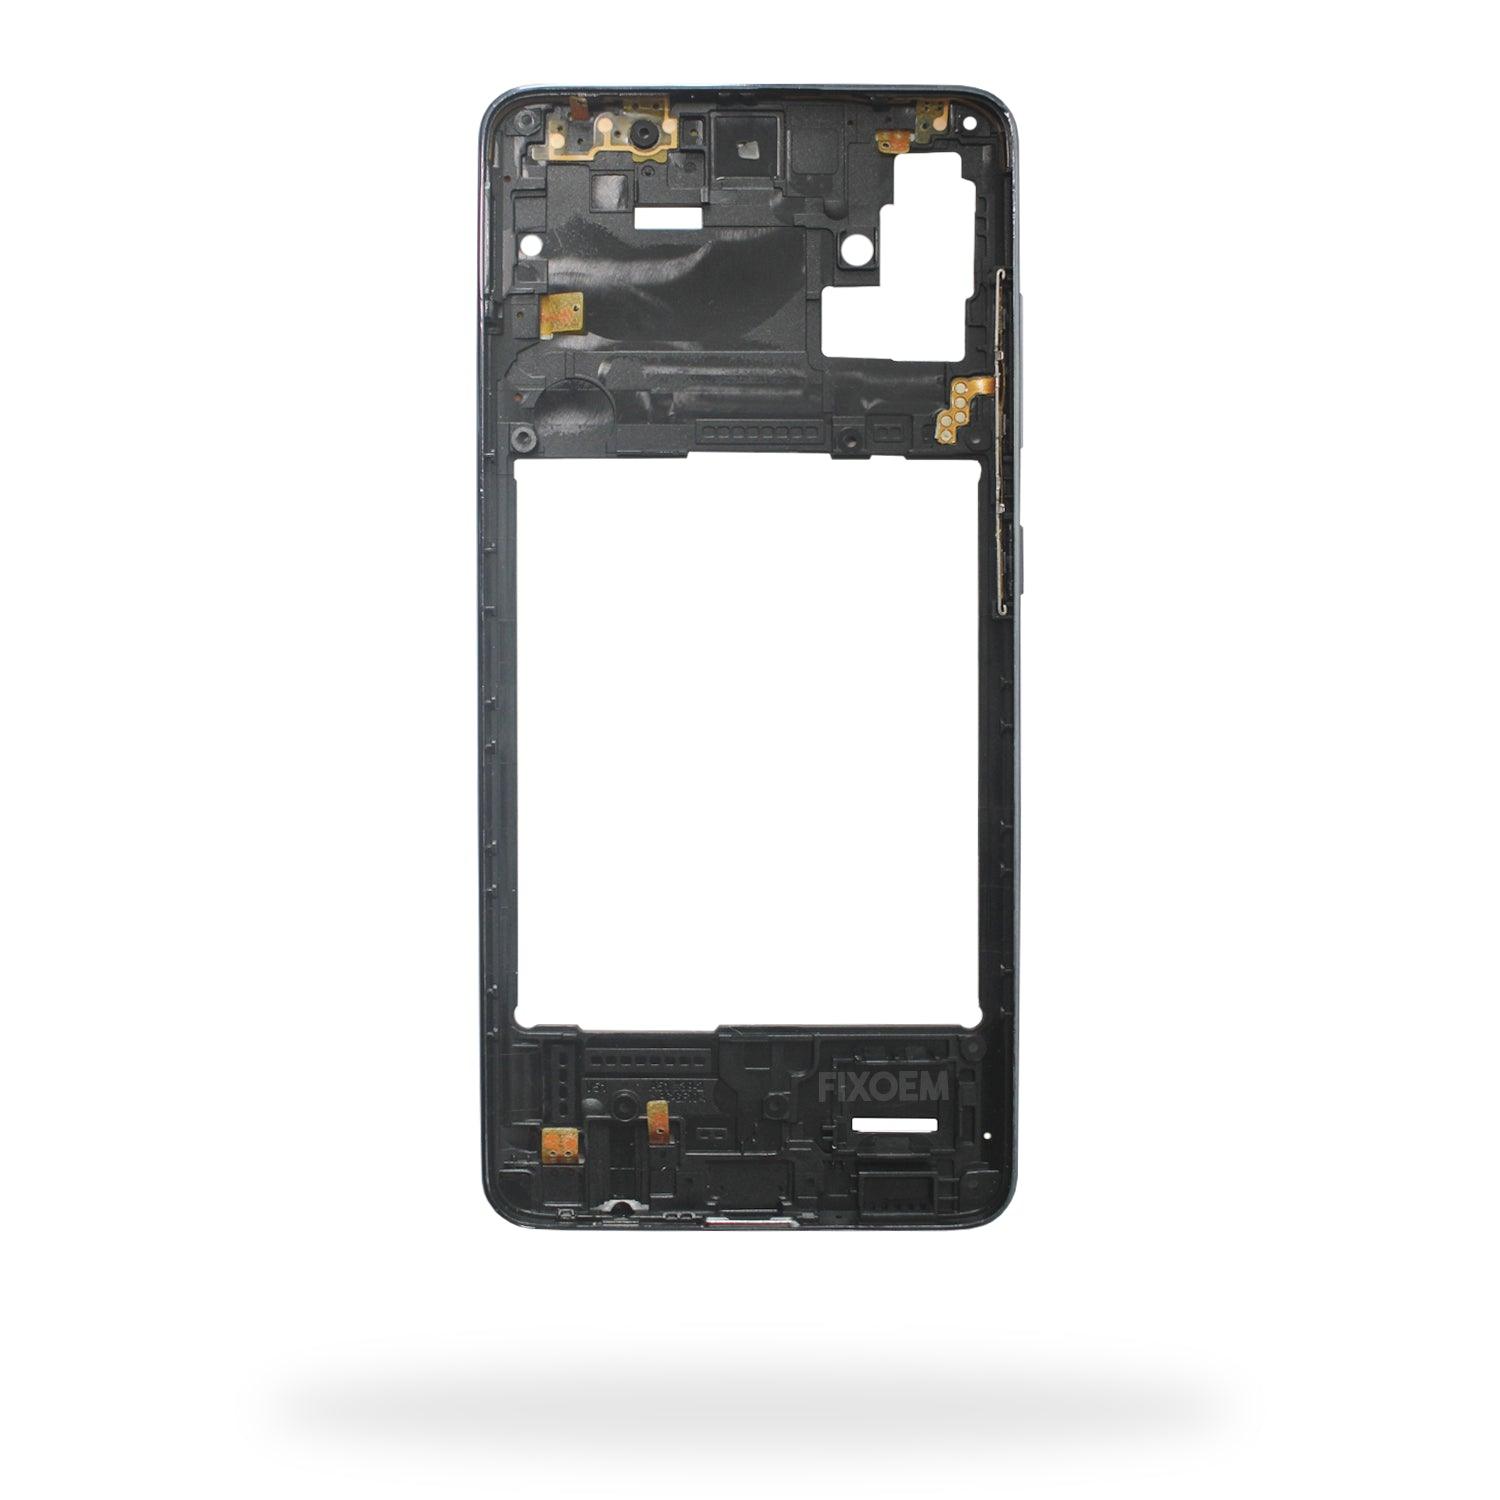 Marco Samsung A51 A515A51 A515SM-A515F a solo $ 80.00 Refaccion y puestos celulares, refurbish y microelectronica.- FixOEM